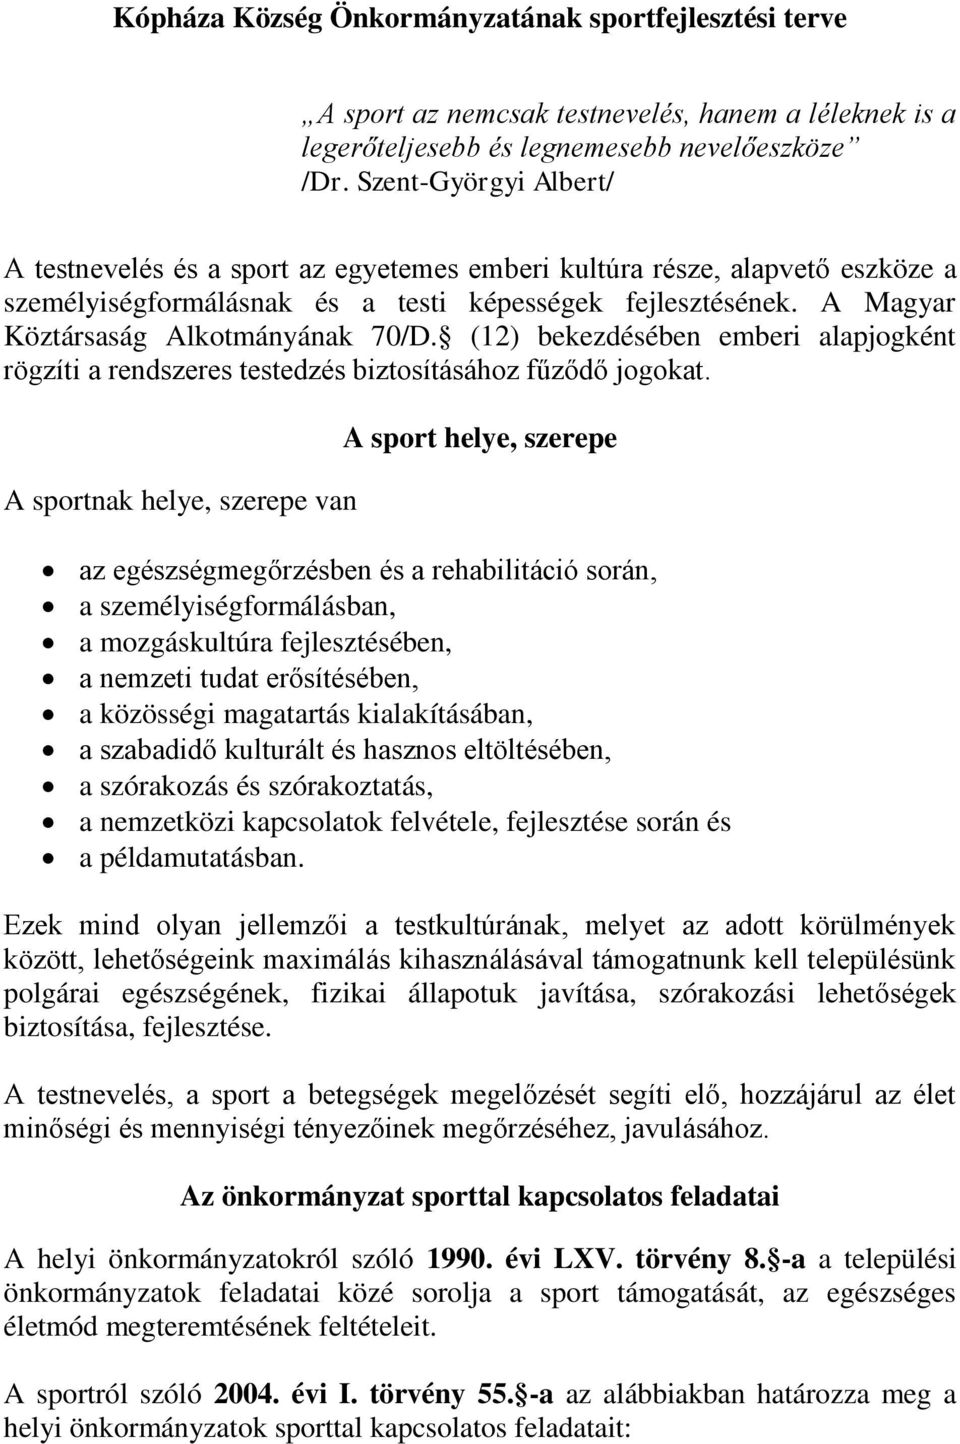 A Magyar Köztársaság Alkotmányának 70/D. (12) bekezdésében emberi alapjogként rögzíti a rendszeres testedzés biztosításához fűződő jogokat.